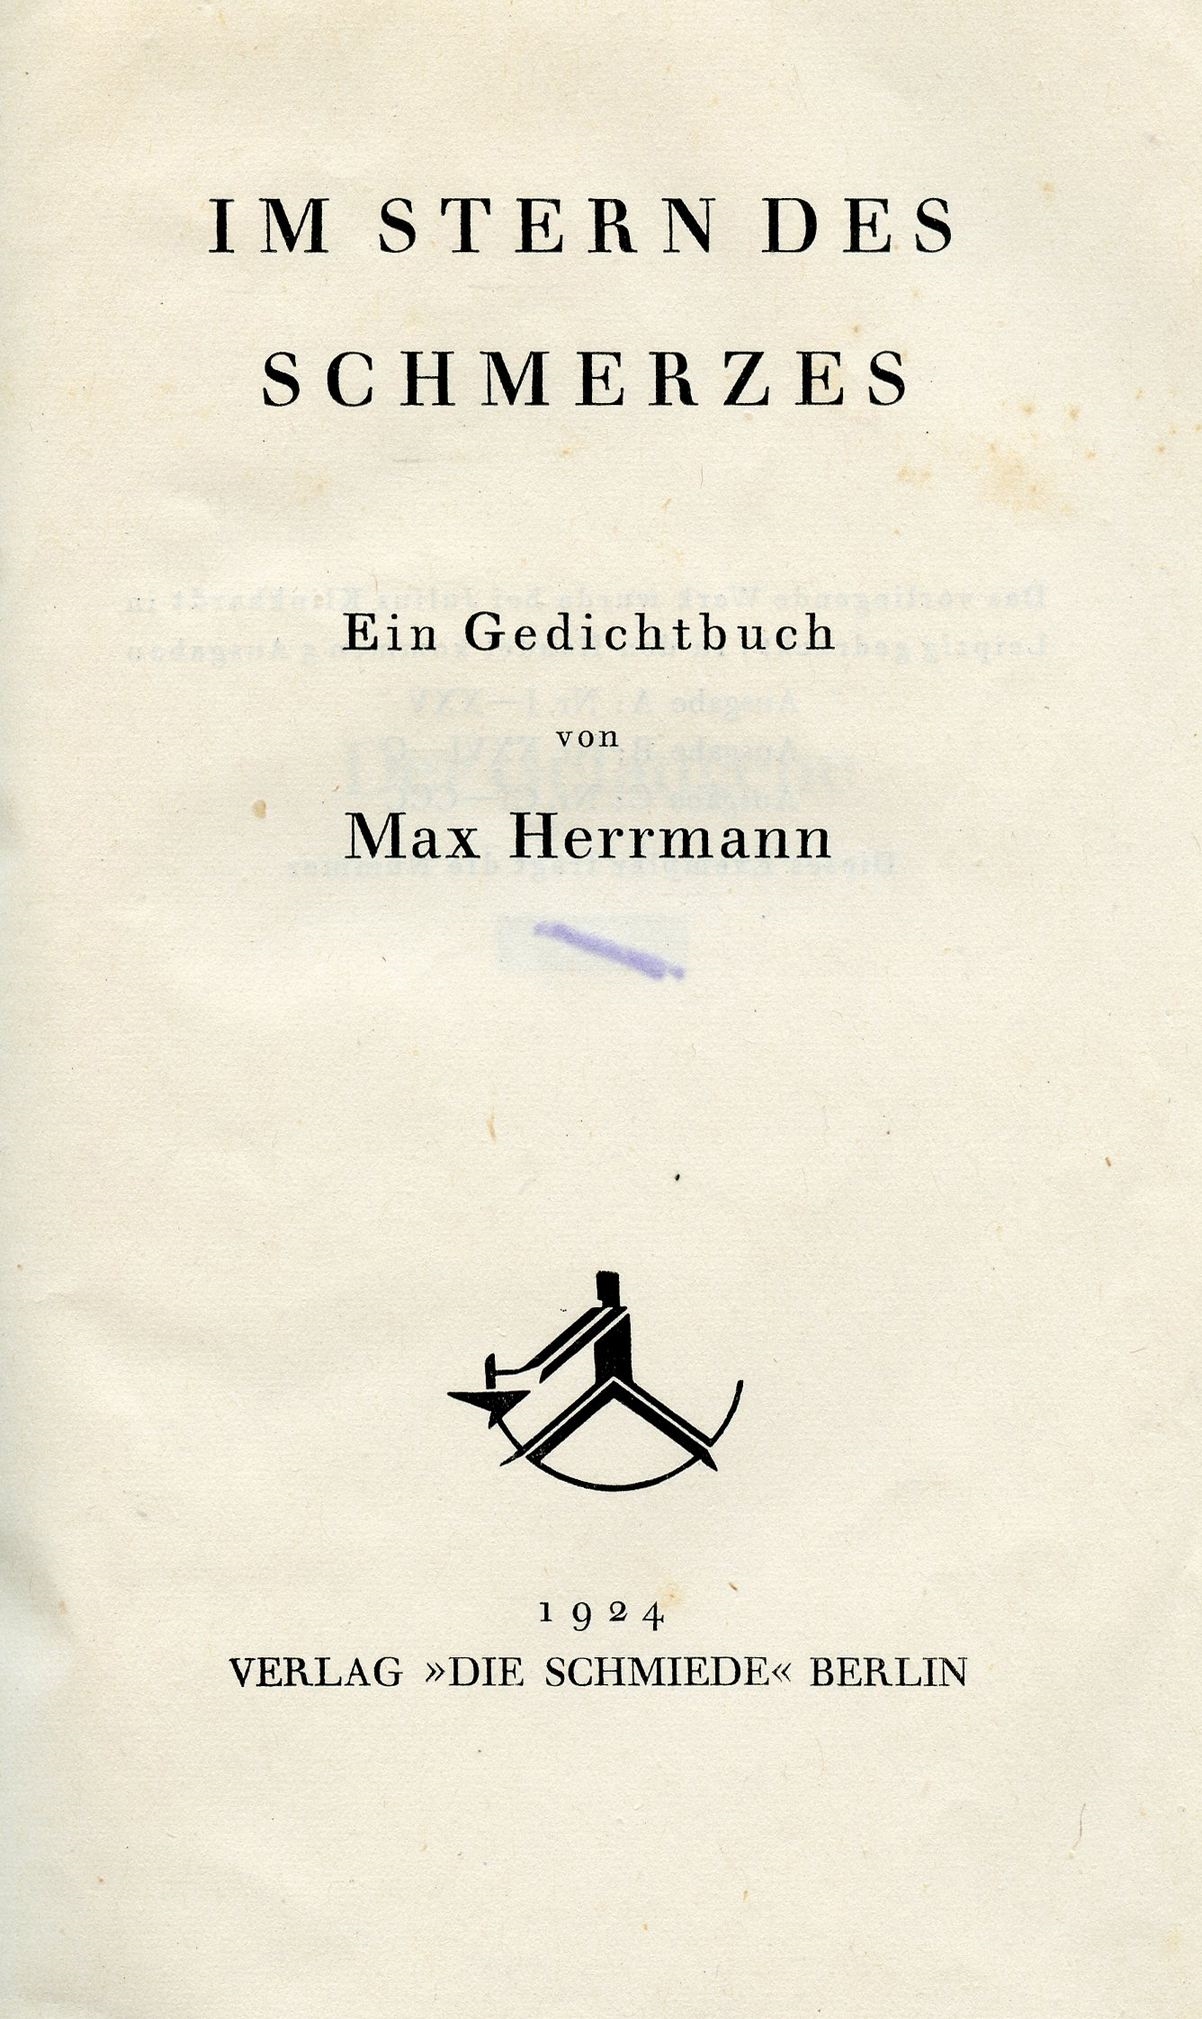 Artwork by Max Hermann, Im Stern des Schmerzes - Max Hermann - Berlin